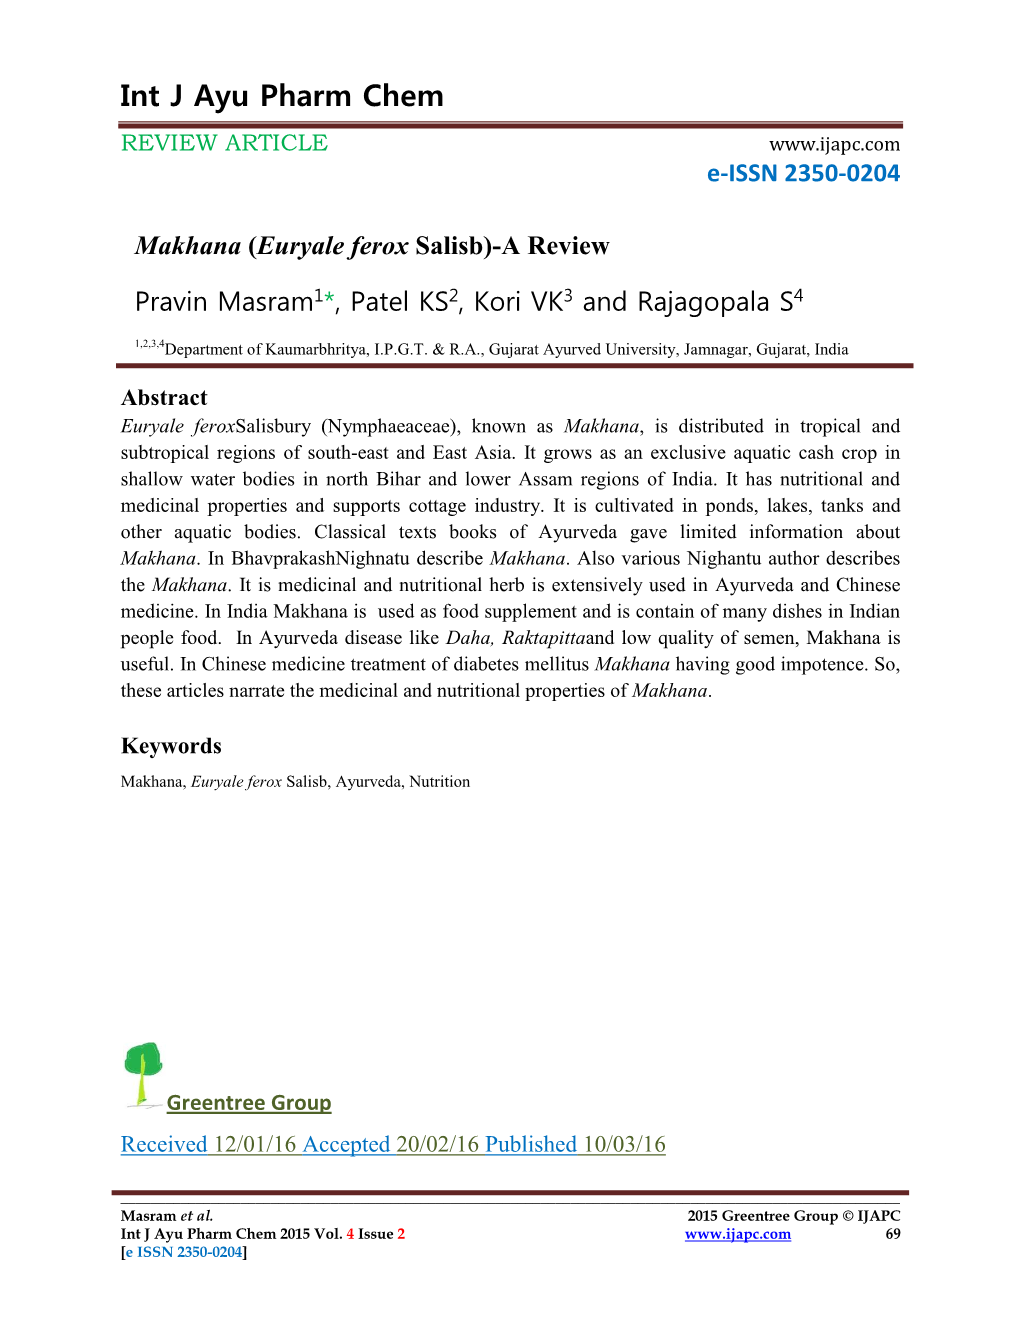 Makhana (Euryale Ferox Salisb)-A Review